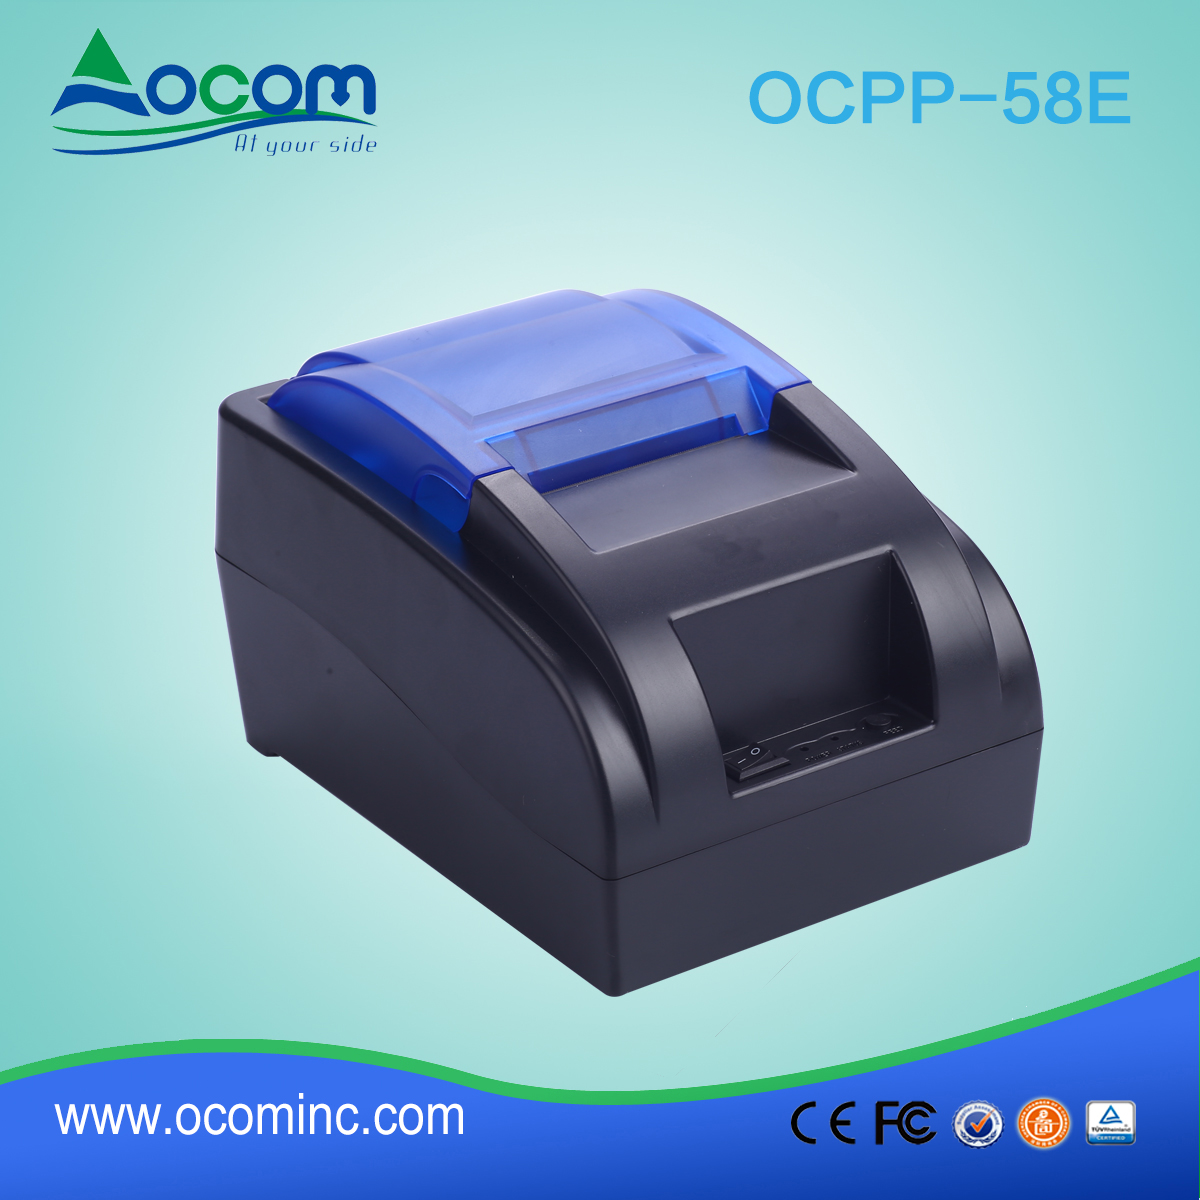 OCPP-58E-Chiny wyprodukowała niskokosztową 58mm drukarkę POS z opcją Bluetooth lub WIFI